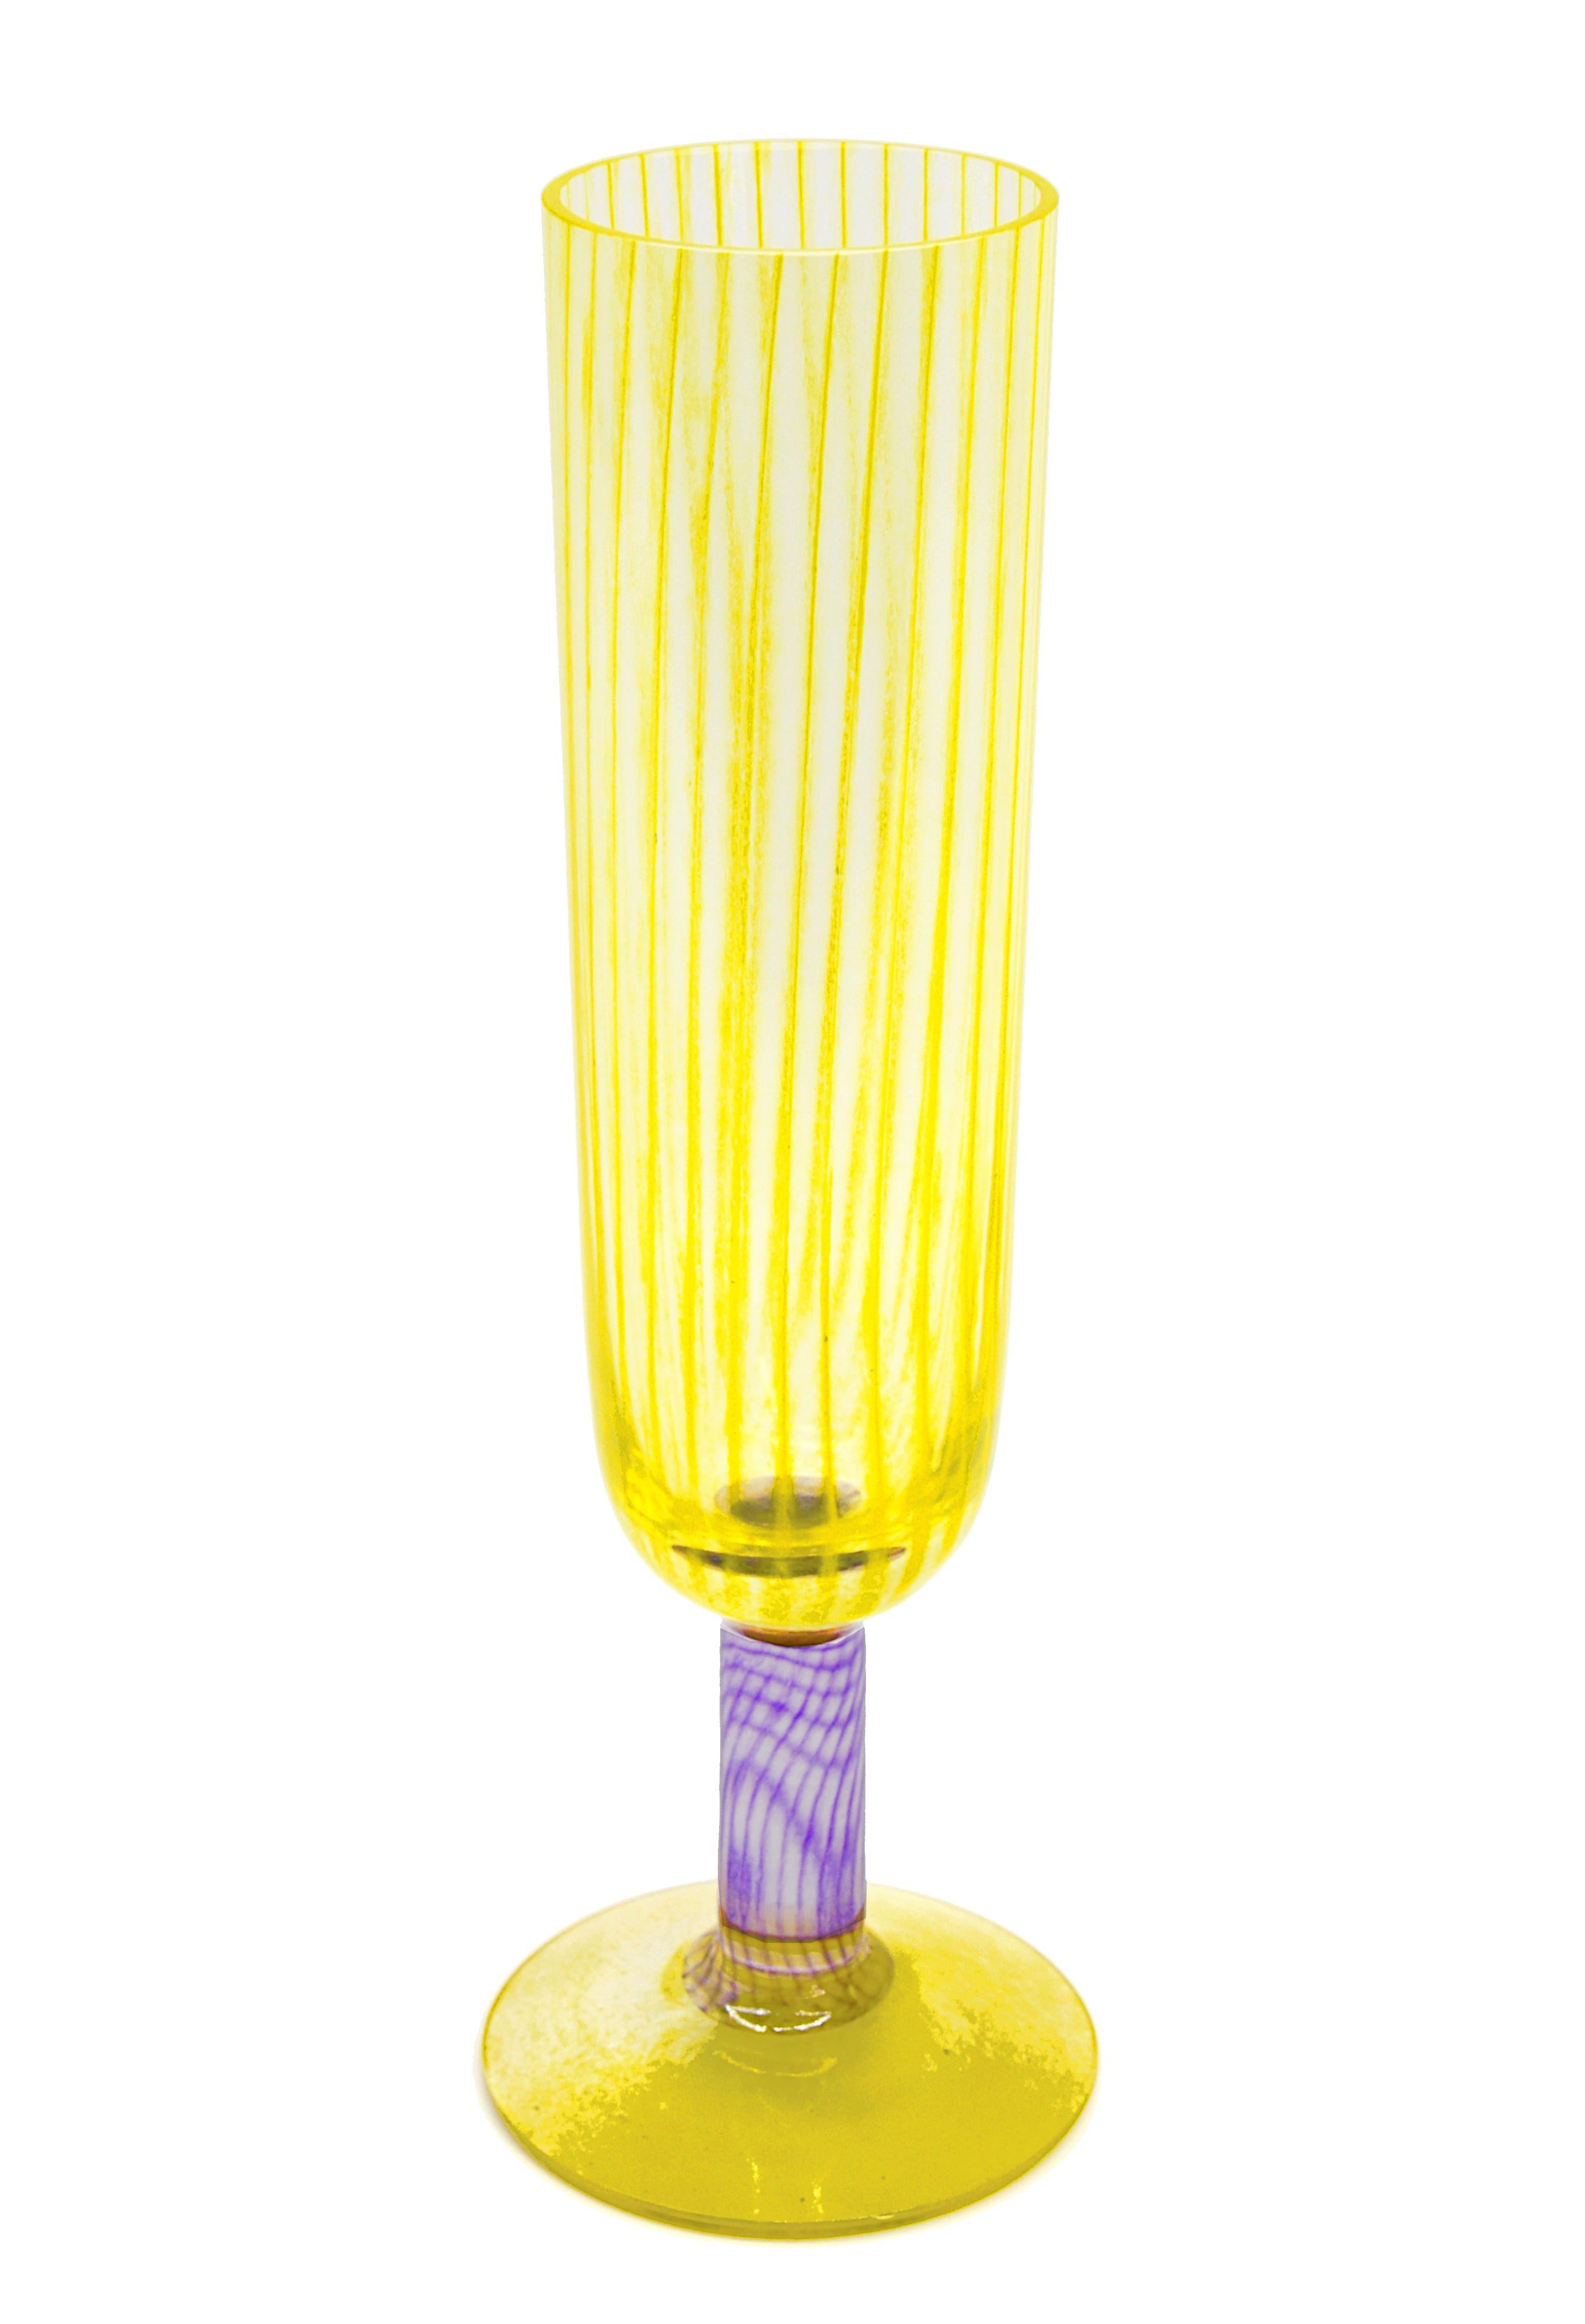 Flötenvase von Kjell Engman bei Kosta-Boda, Schweden, 1999. Filigranes Glas mit gelbem Sockel und Körper, lila Bein. Maße: Höhe 25 cm (9.85